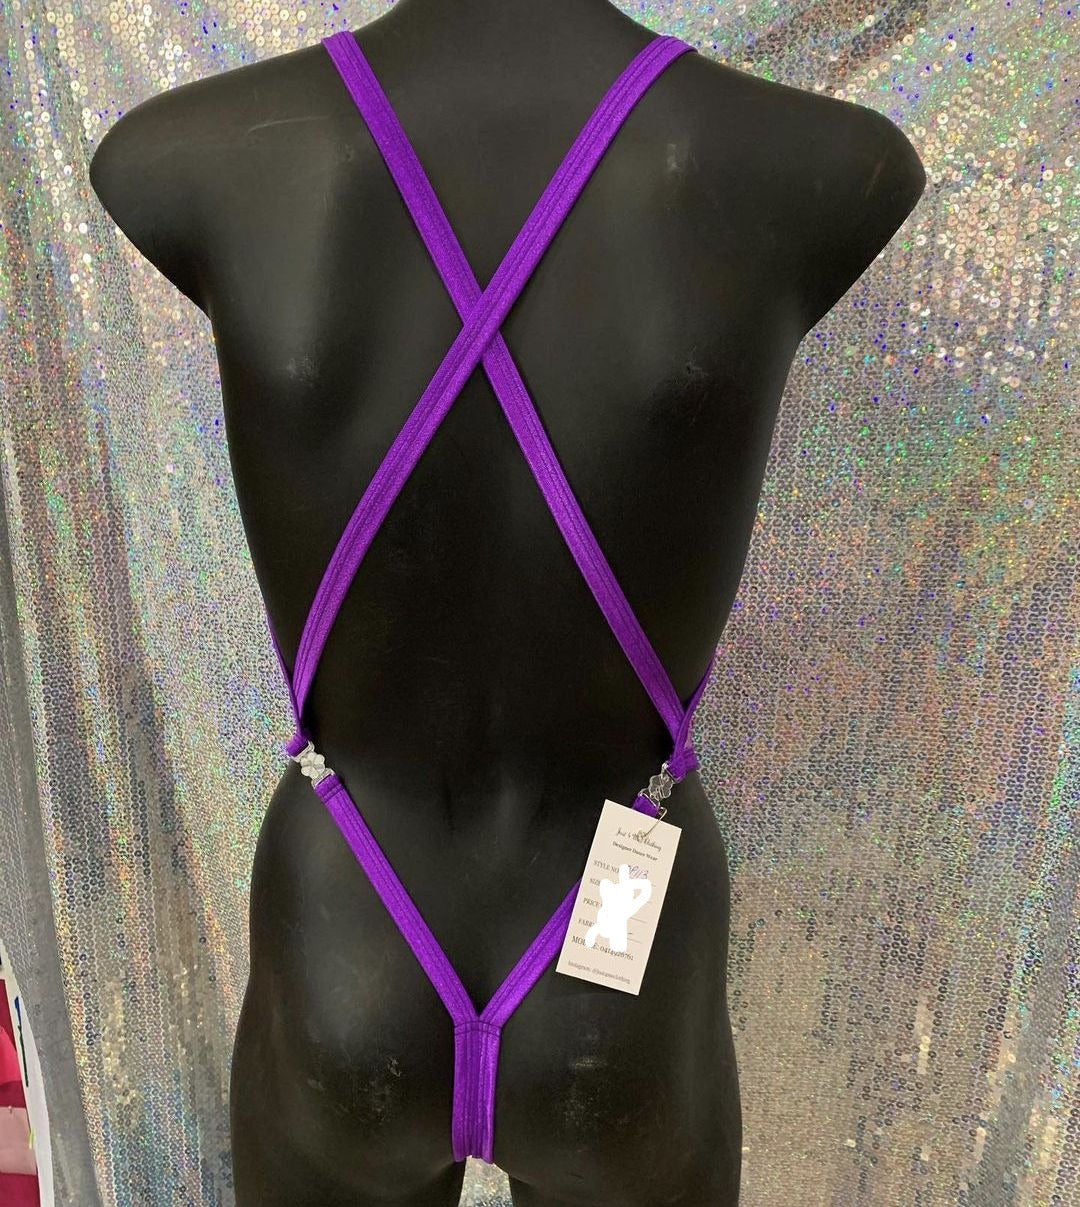 Lace Stripper Clips Teddy Bodysuit (Size S)